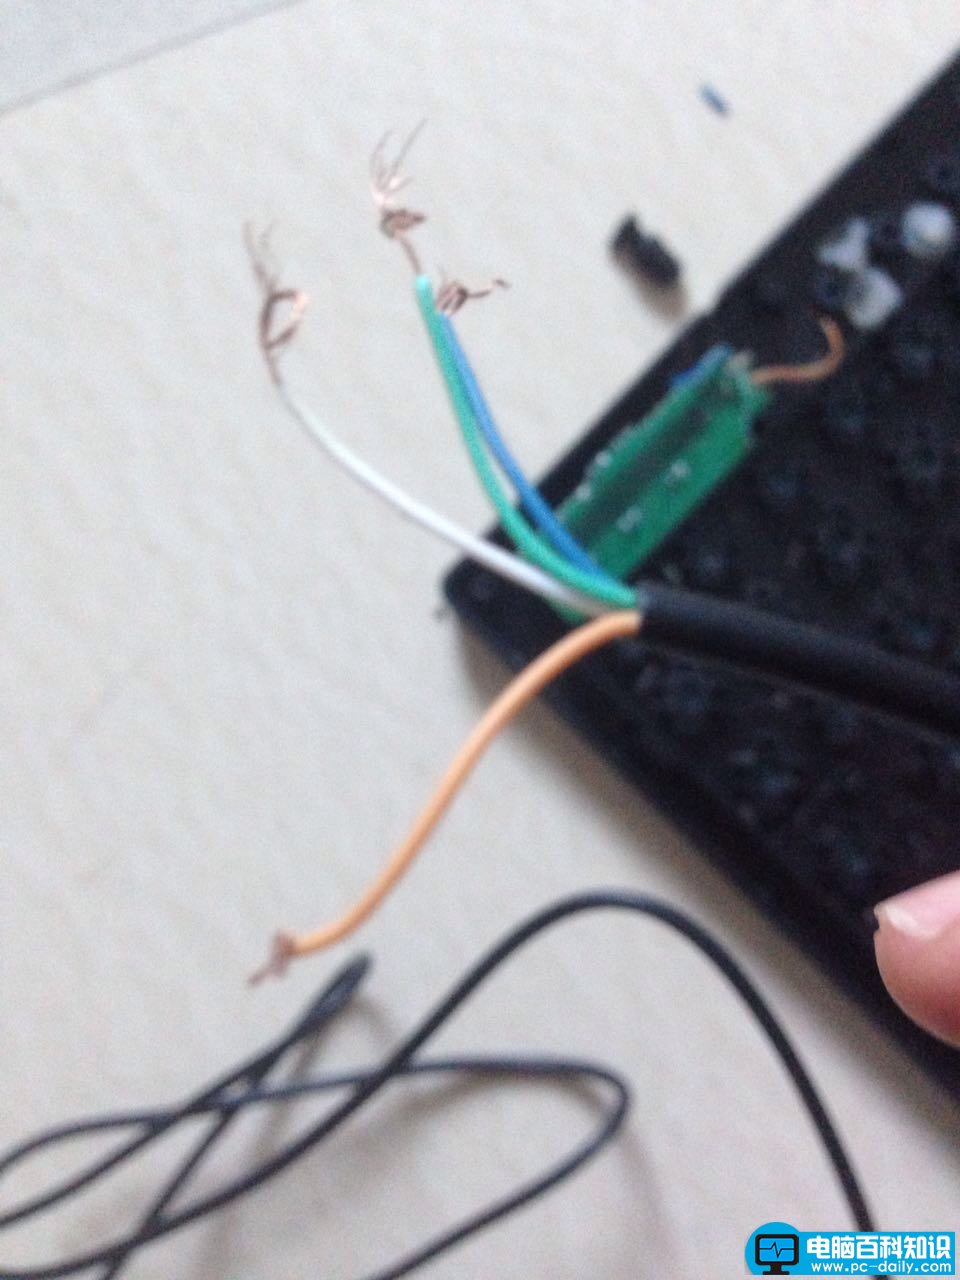 键盘线断了怎么修理